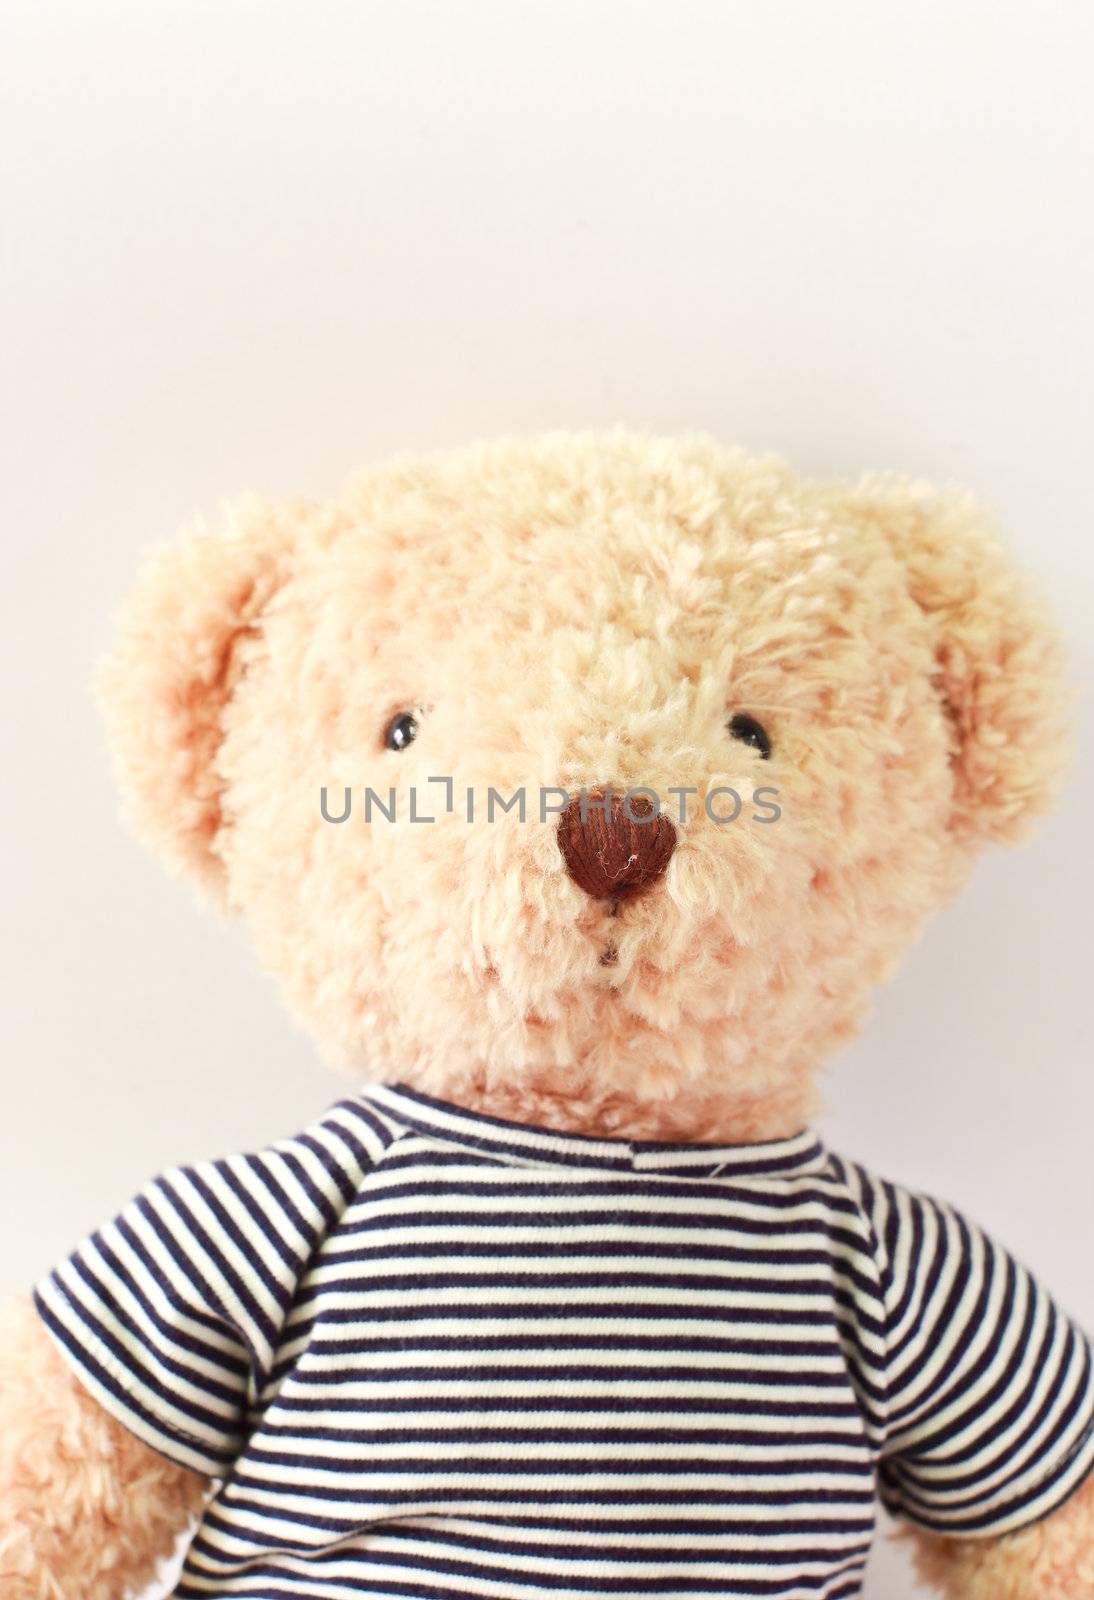 Cute teddy bear with t-shirt by nuchylee